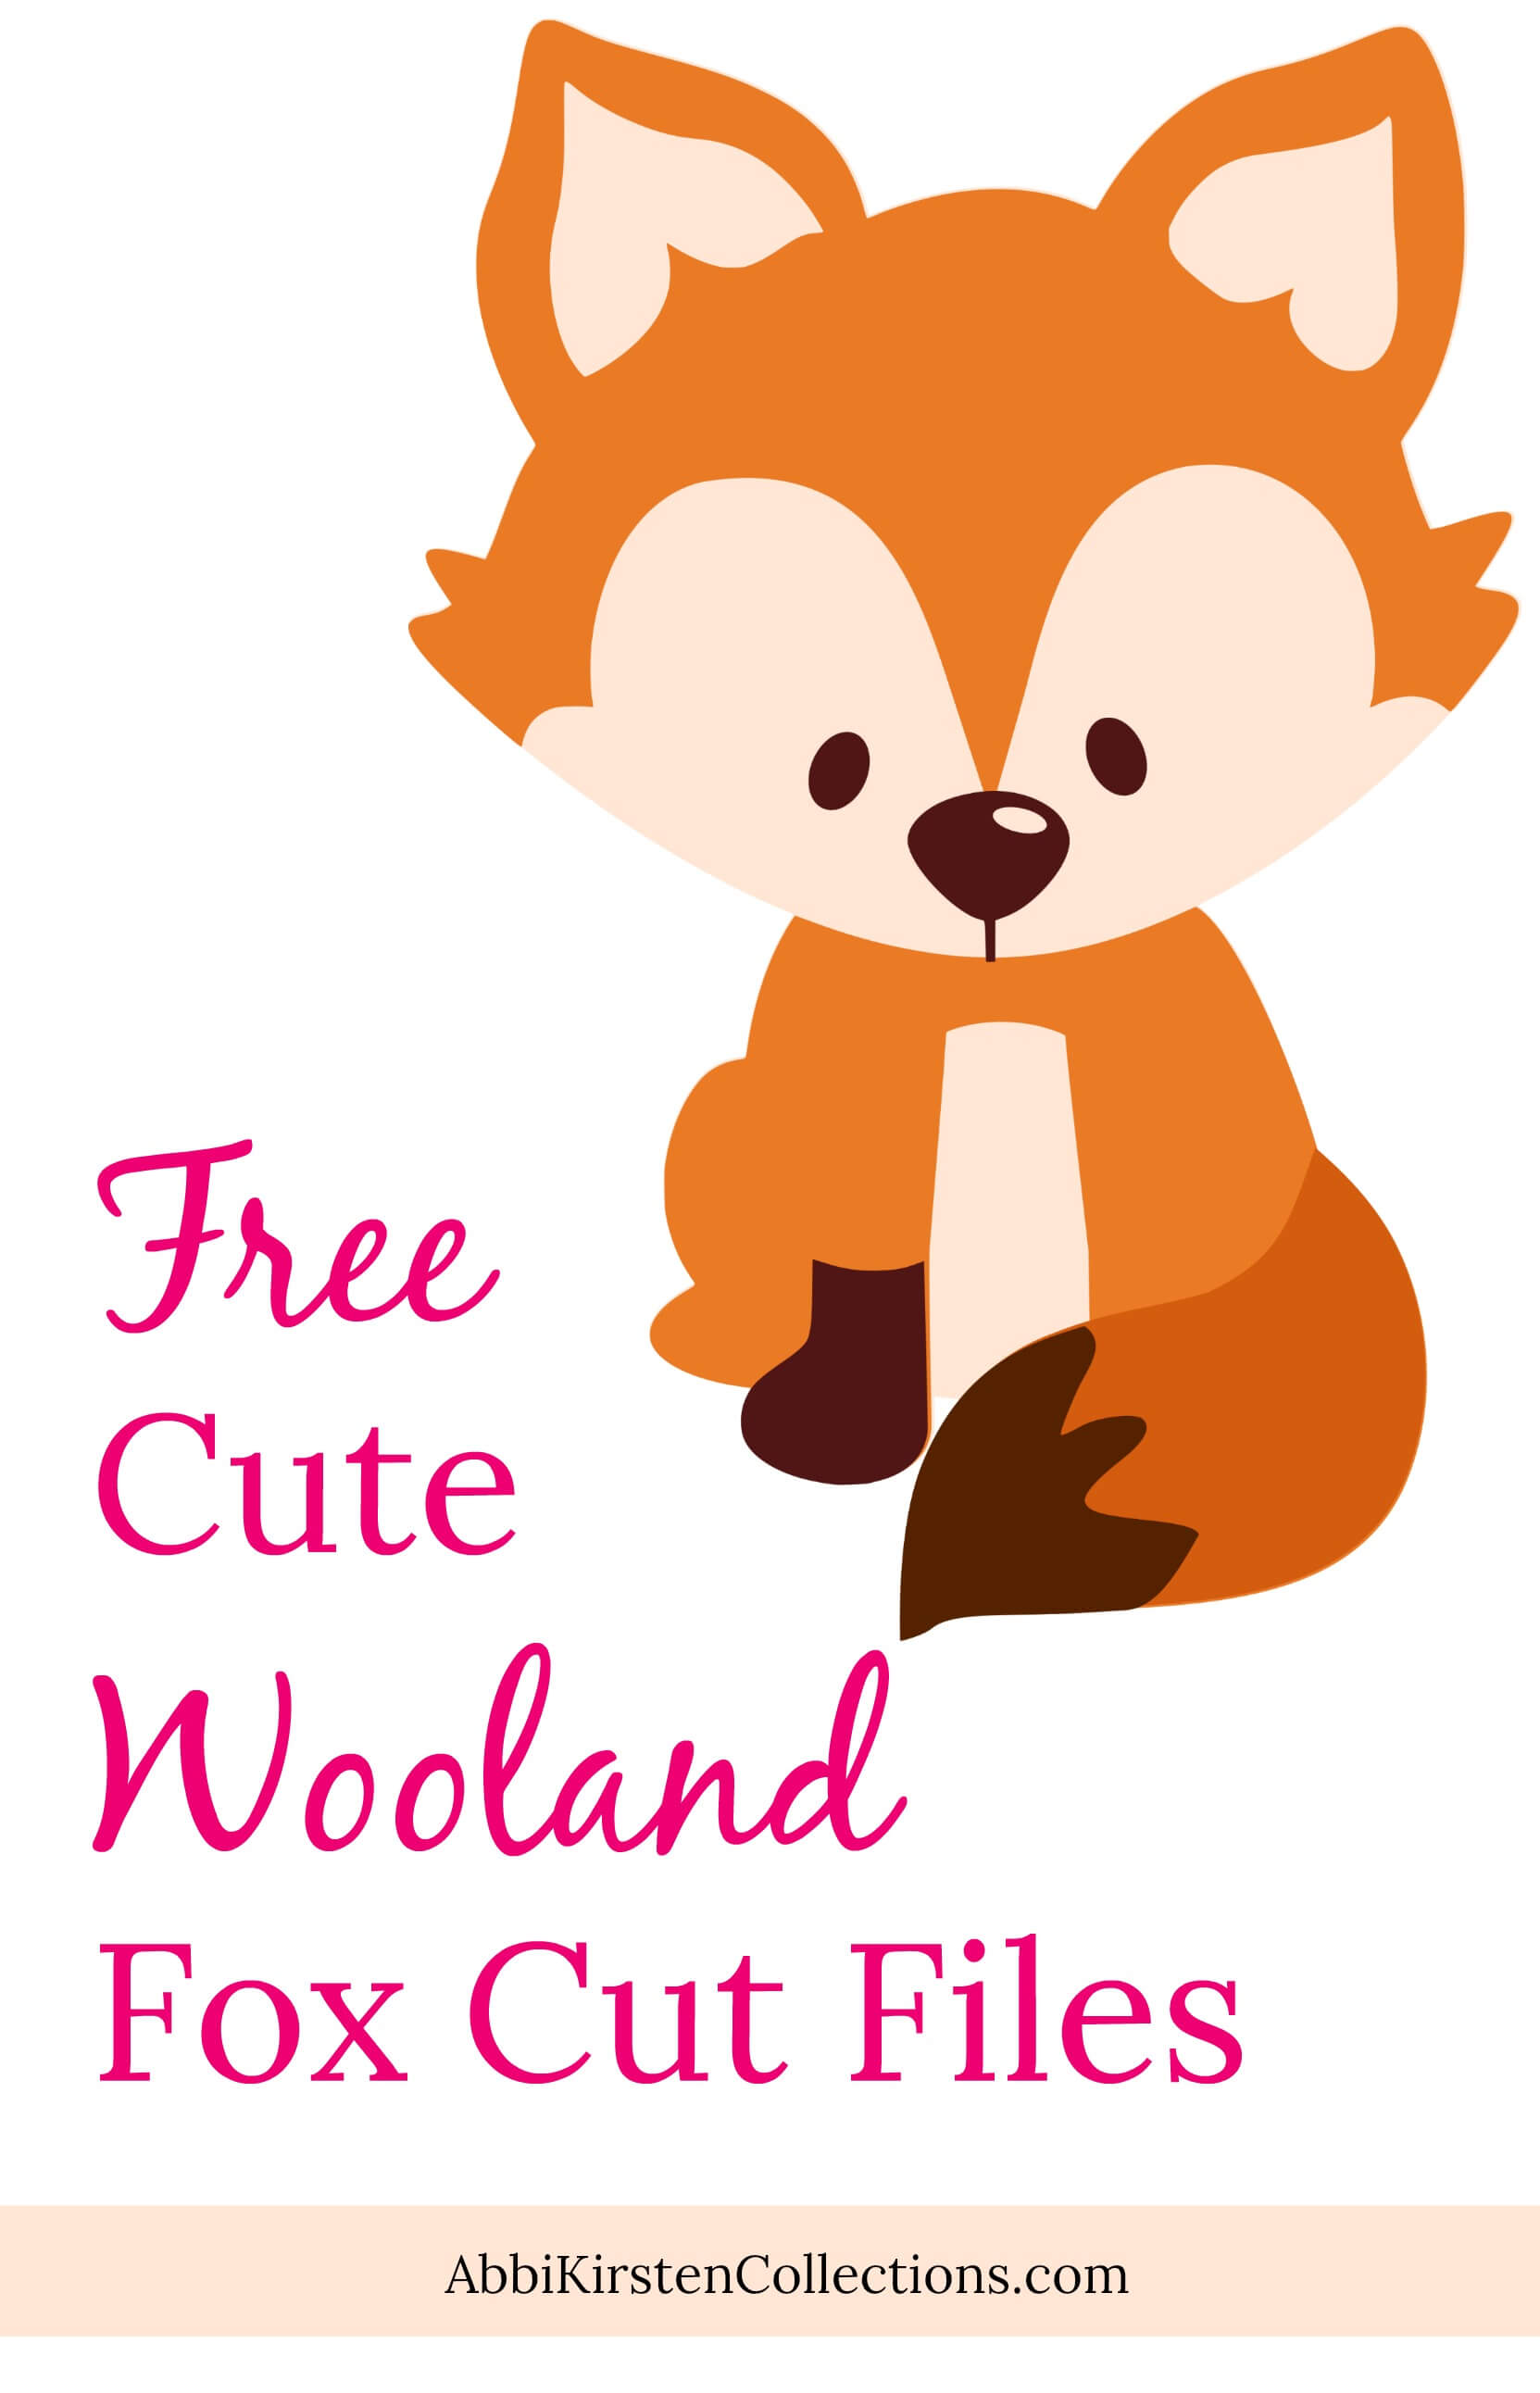 Free cute fox cut files. 